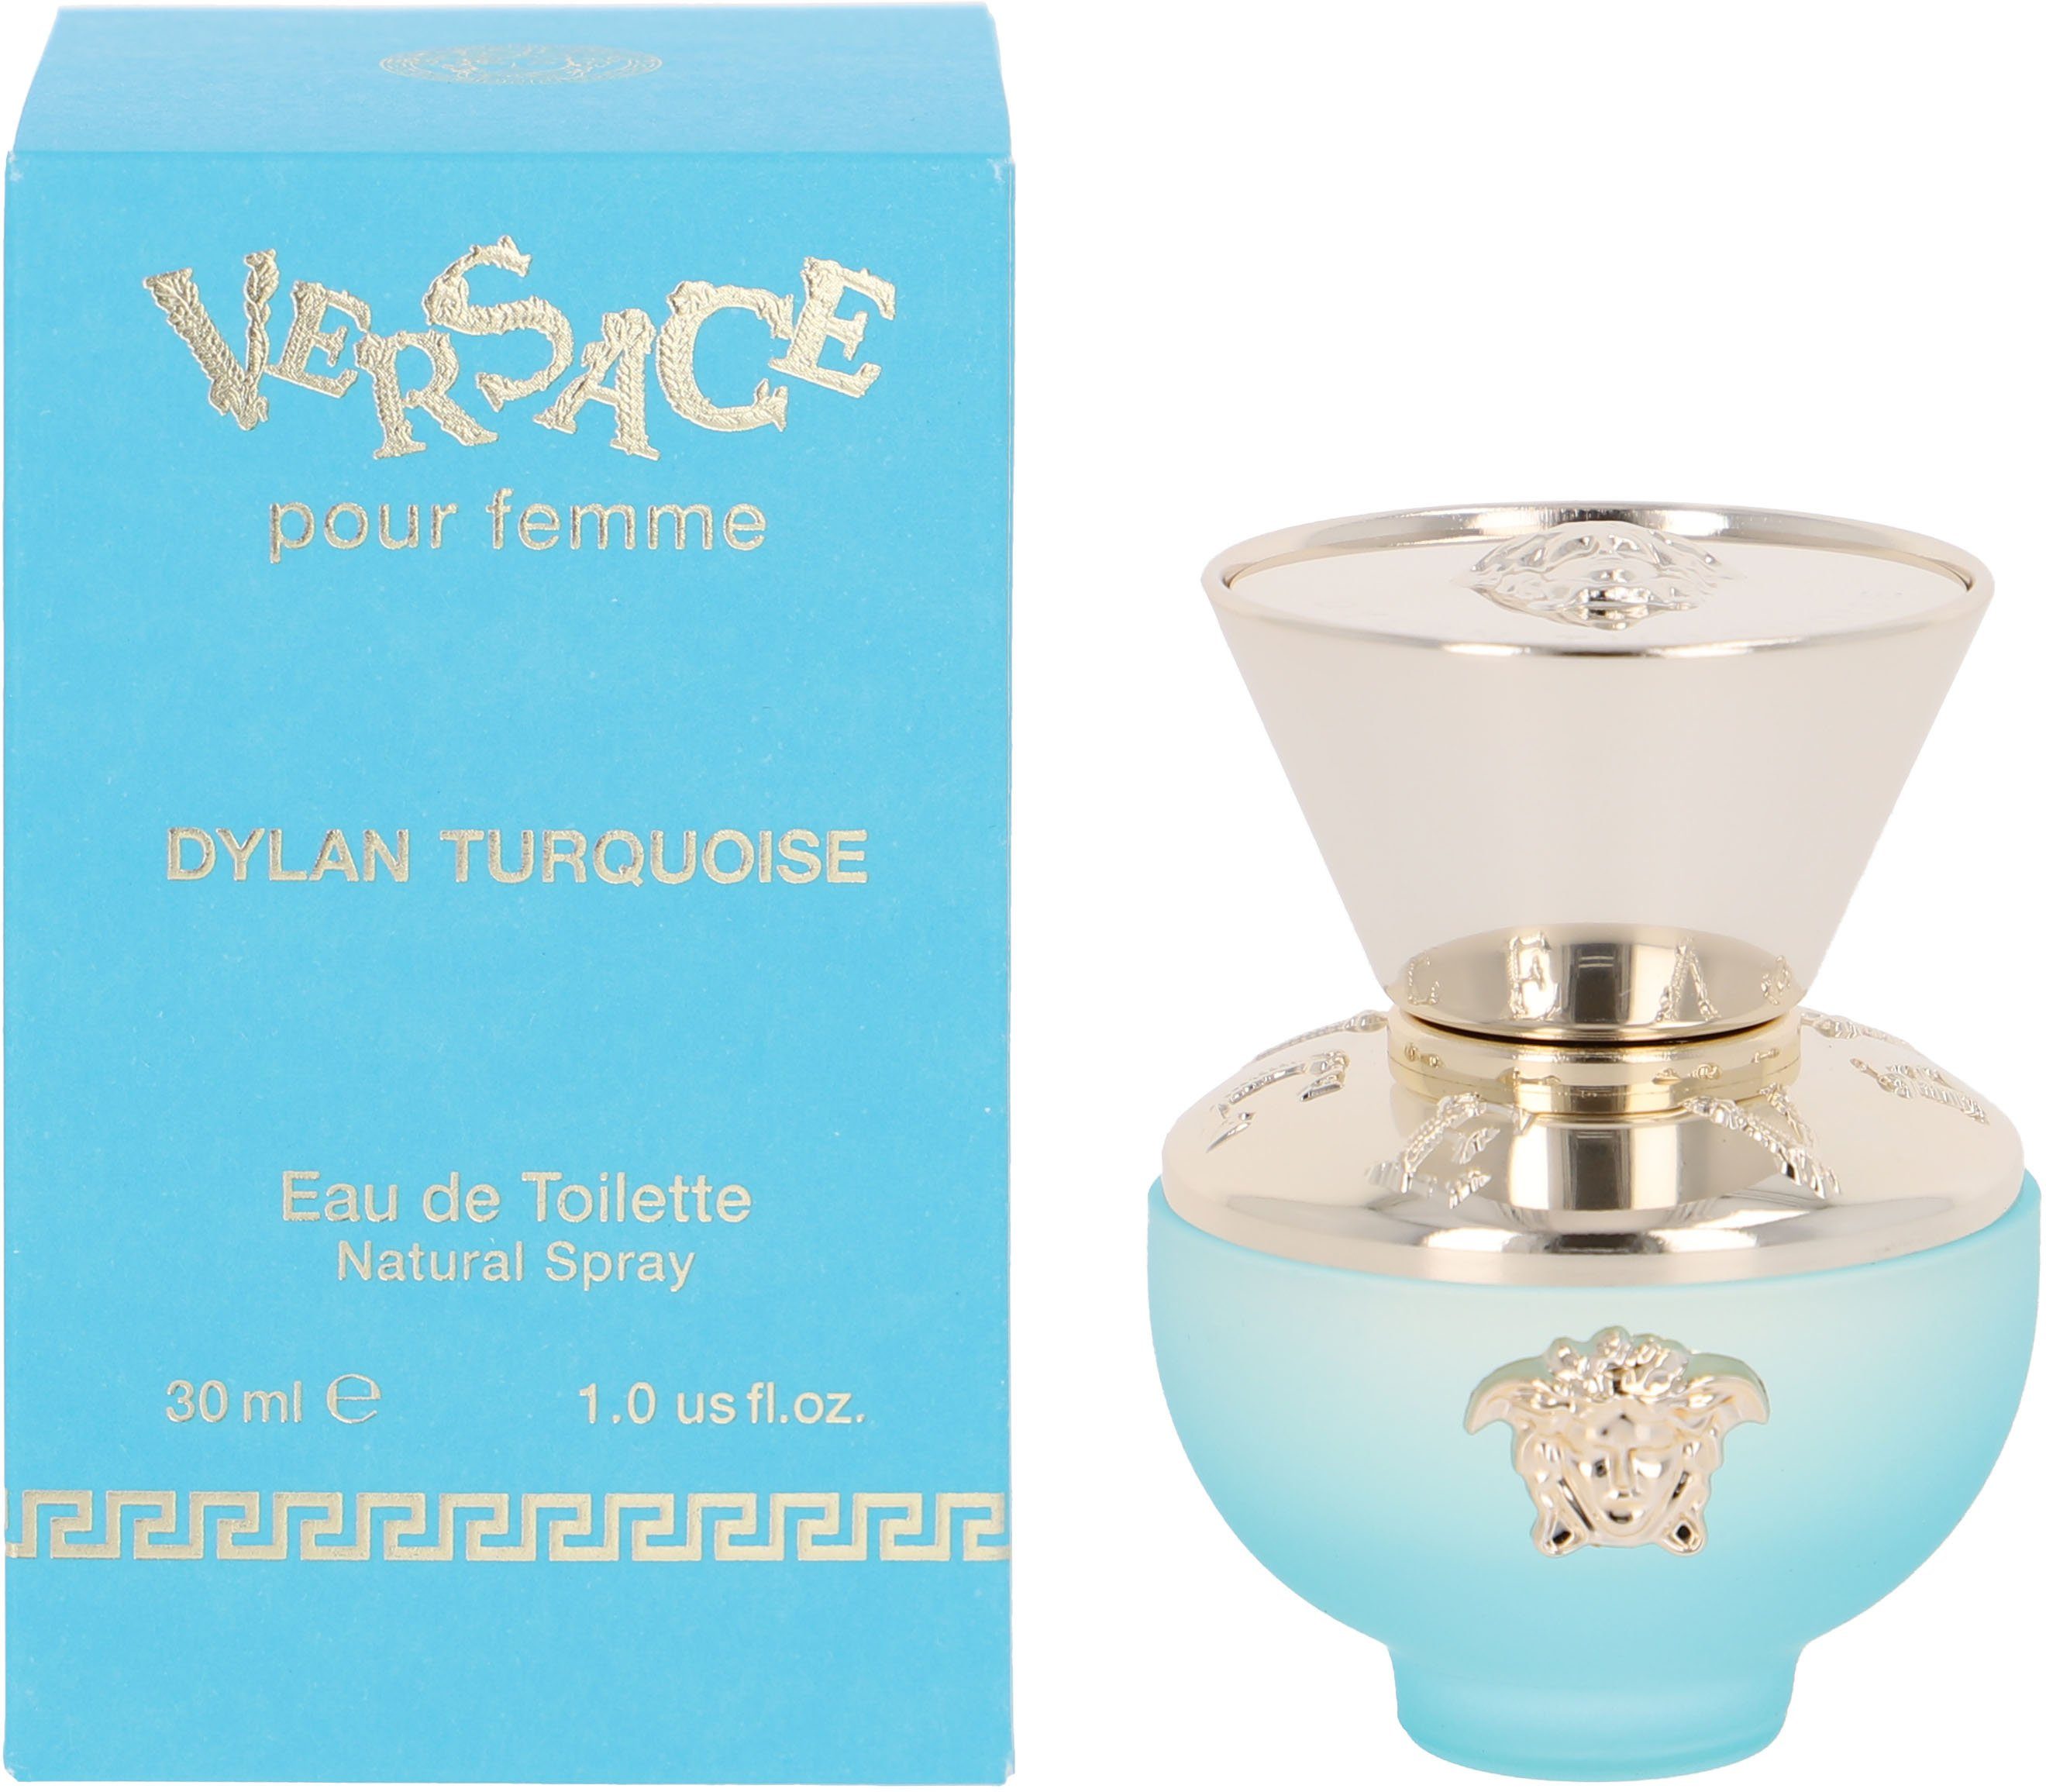 Versace Eau de Toilette Turquoise Femme Dylan Versace